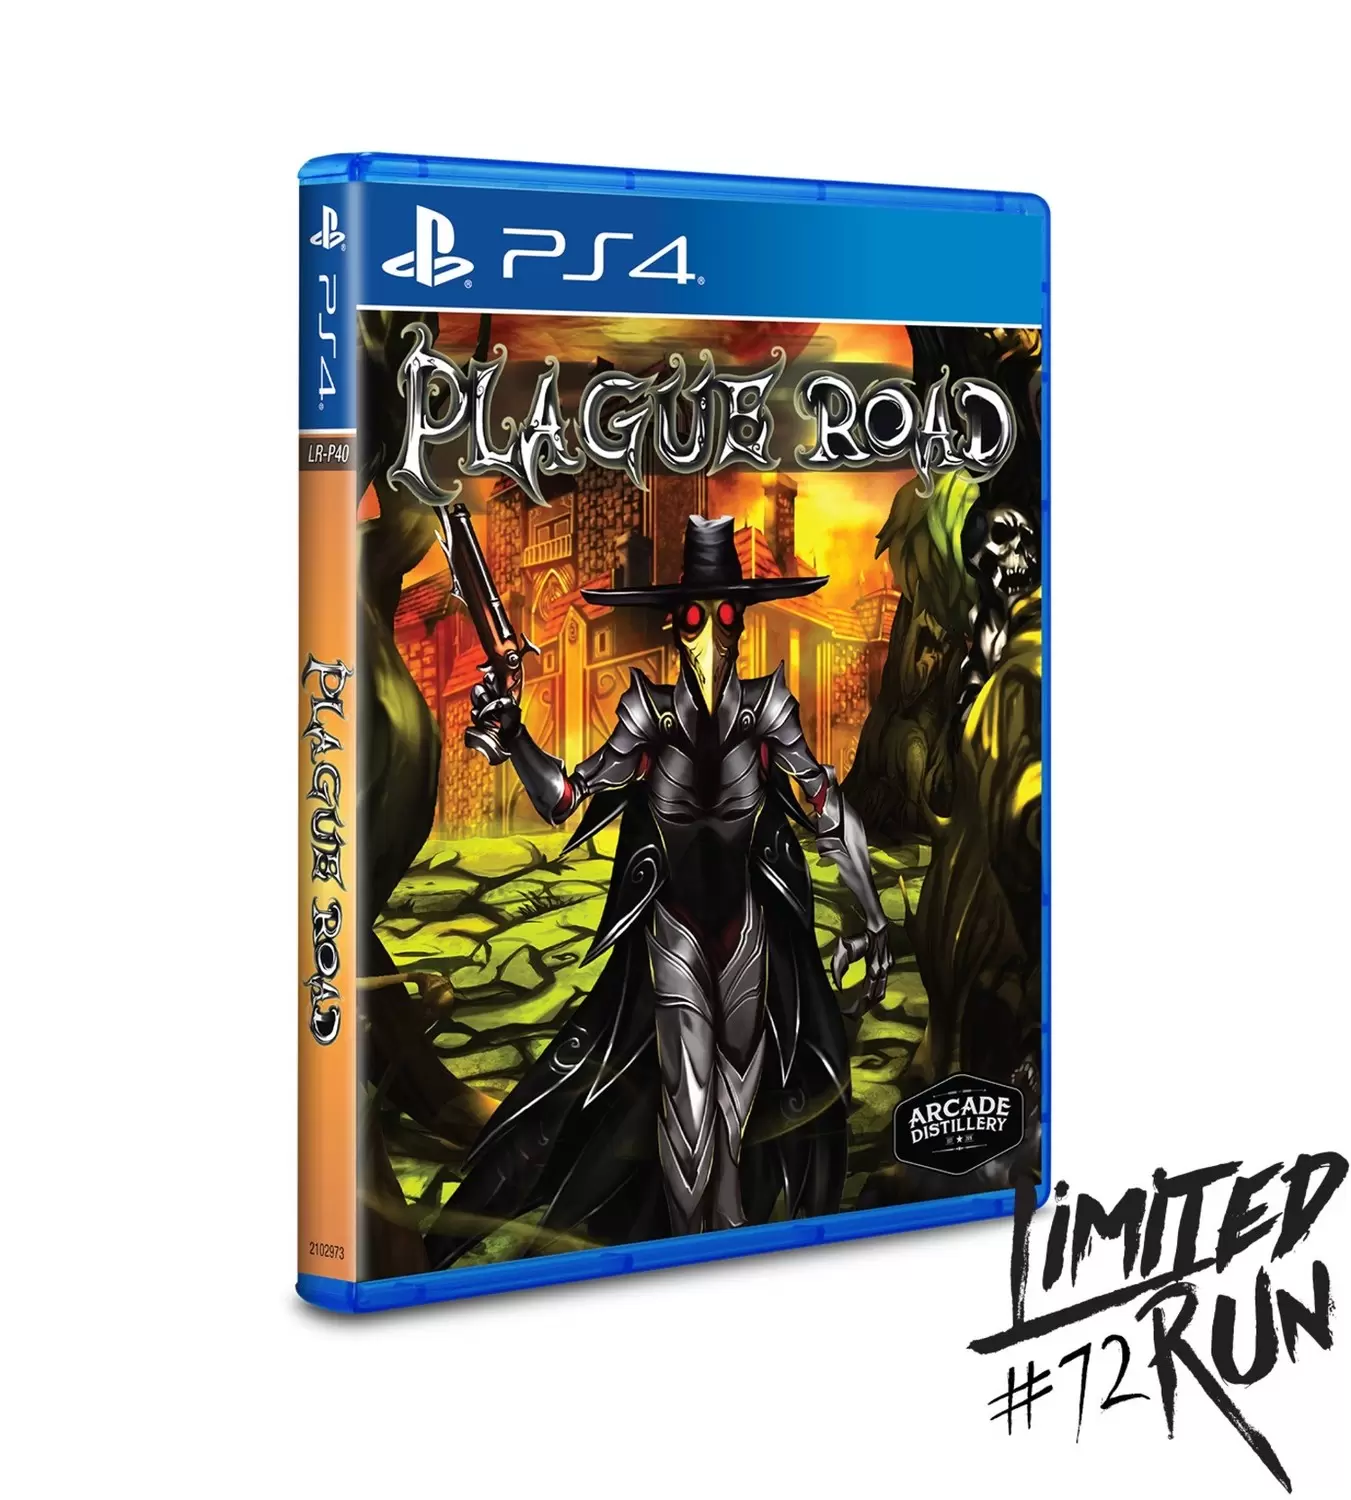 PS4 Games - Plague Road